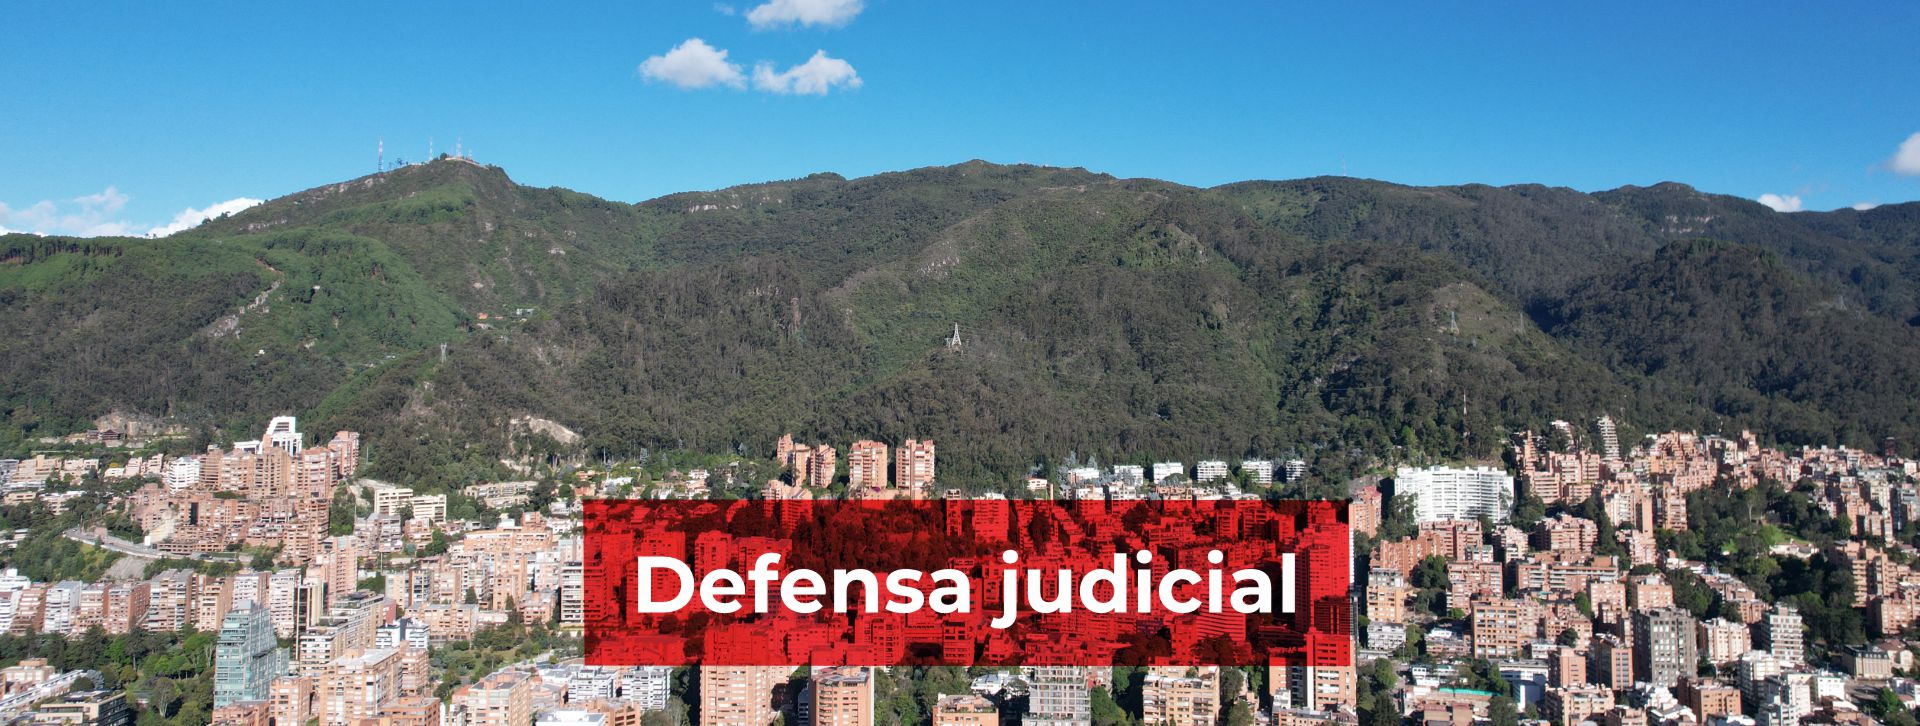 banner defensa judicial